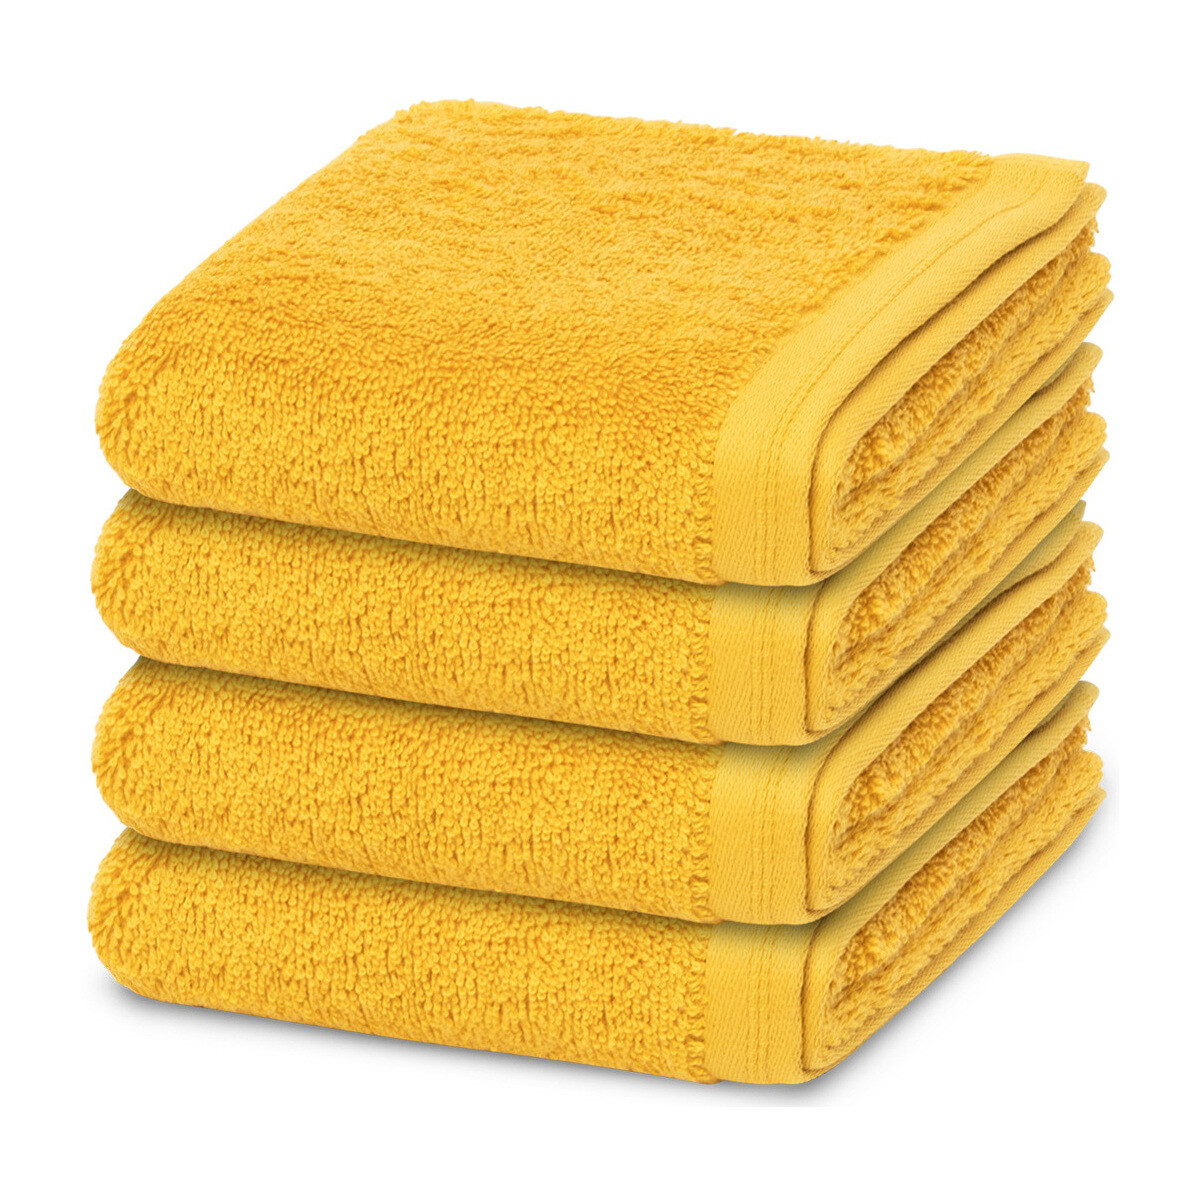 Home Handtuch und Waschlappen Vossen 4er Pack Vegan Life Gelb